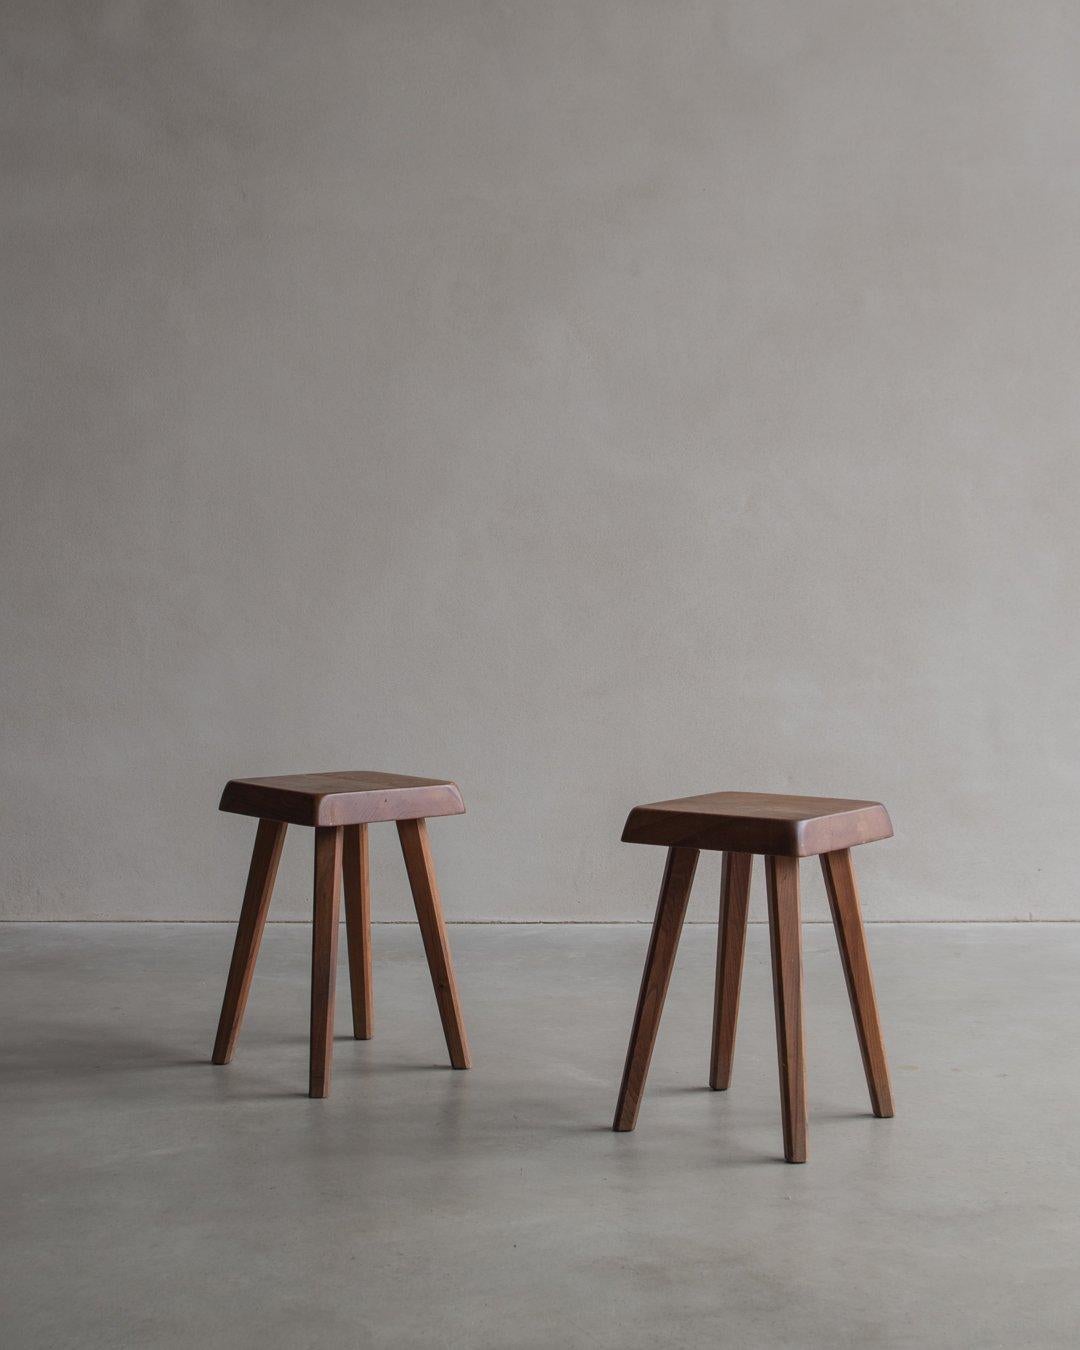 Le tabouret S01, conçu par le célèbre architecte français Pierre Chapo dans les années 1960, se caractérise par une assise carrée aux bords arrondis et inclinés, soutenue par quatre pieds. L'artisanat met en évidence la qualité du travail du bois et